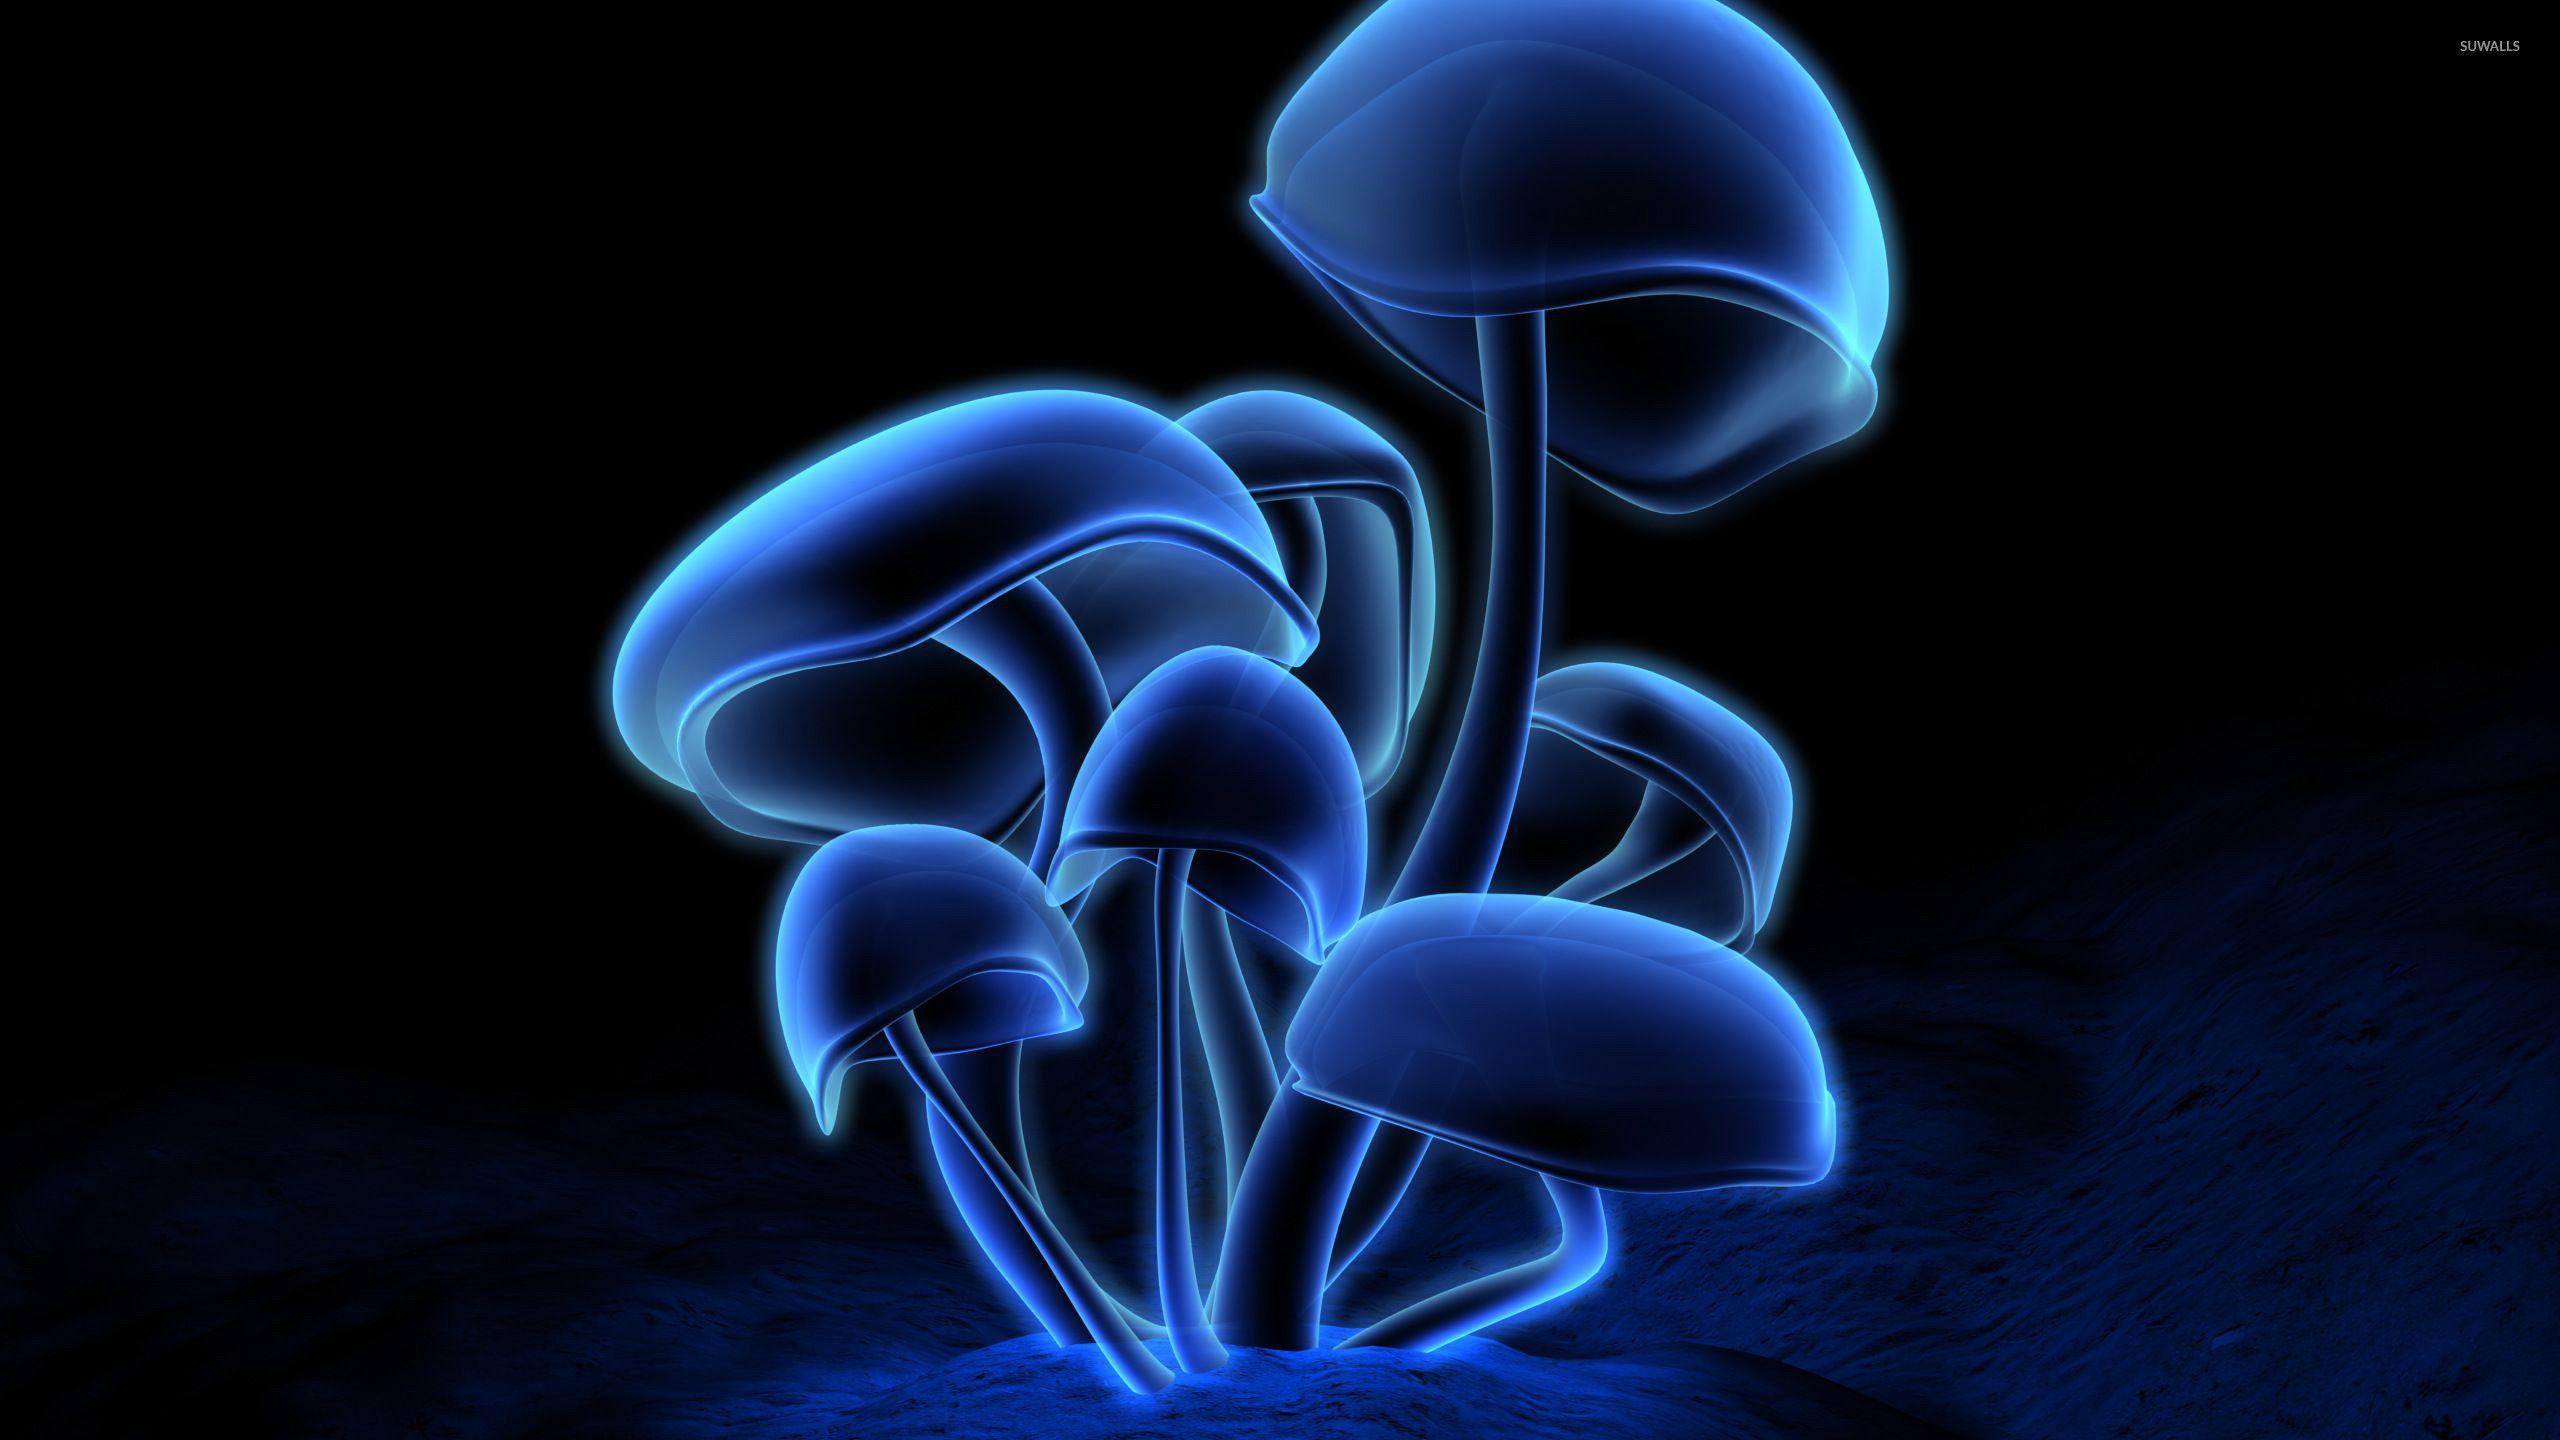 Blue Mushroom Wallpapers - Top Free ...